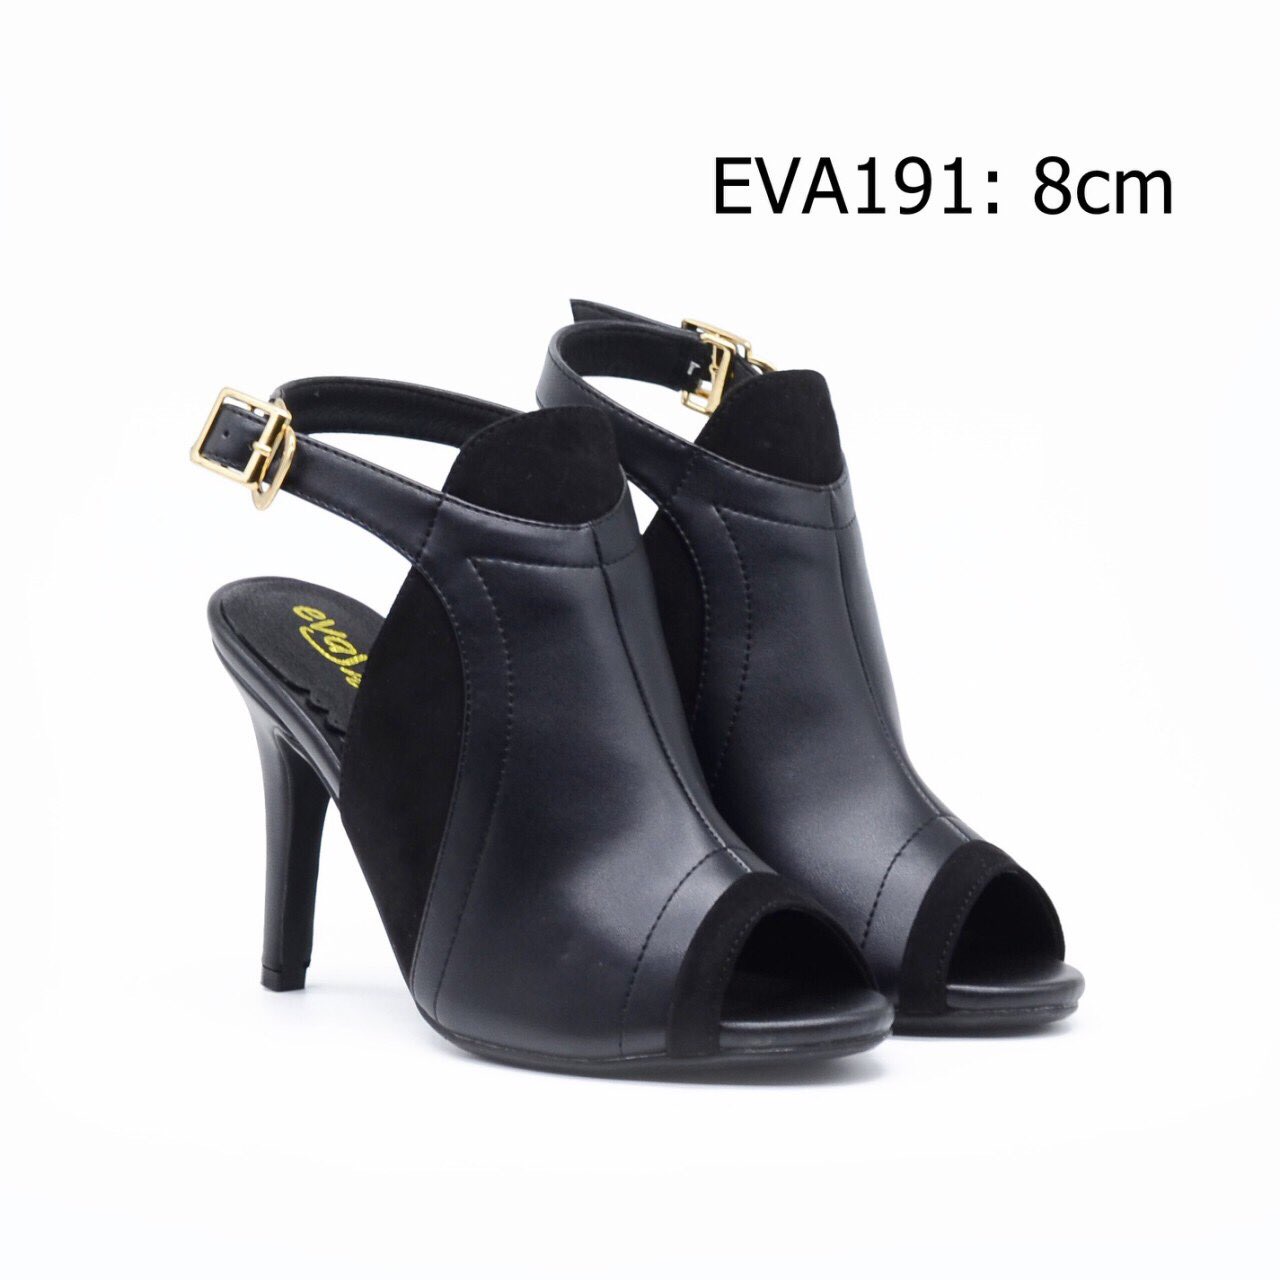 Giày cao gót nữ kiểu boots EVA191 thiết kế quai hậu cao 8cm